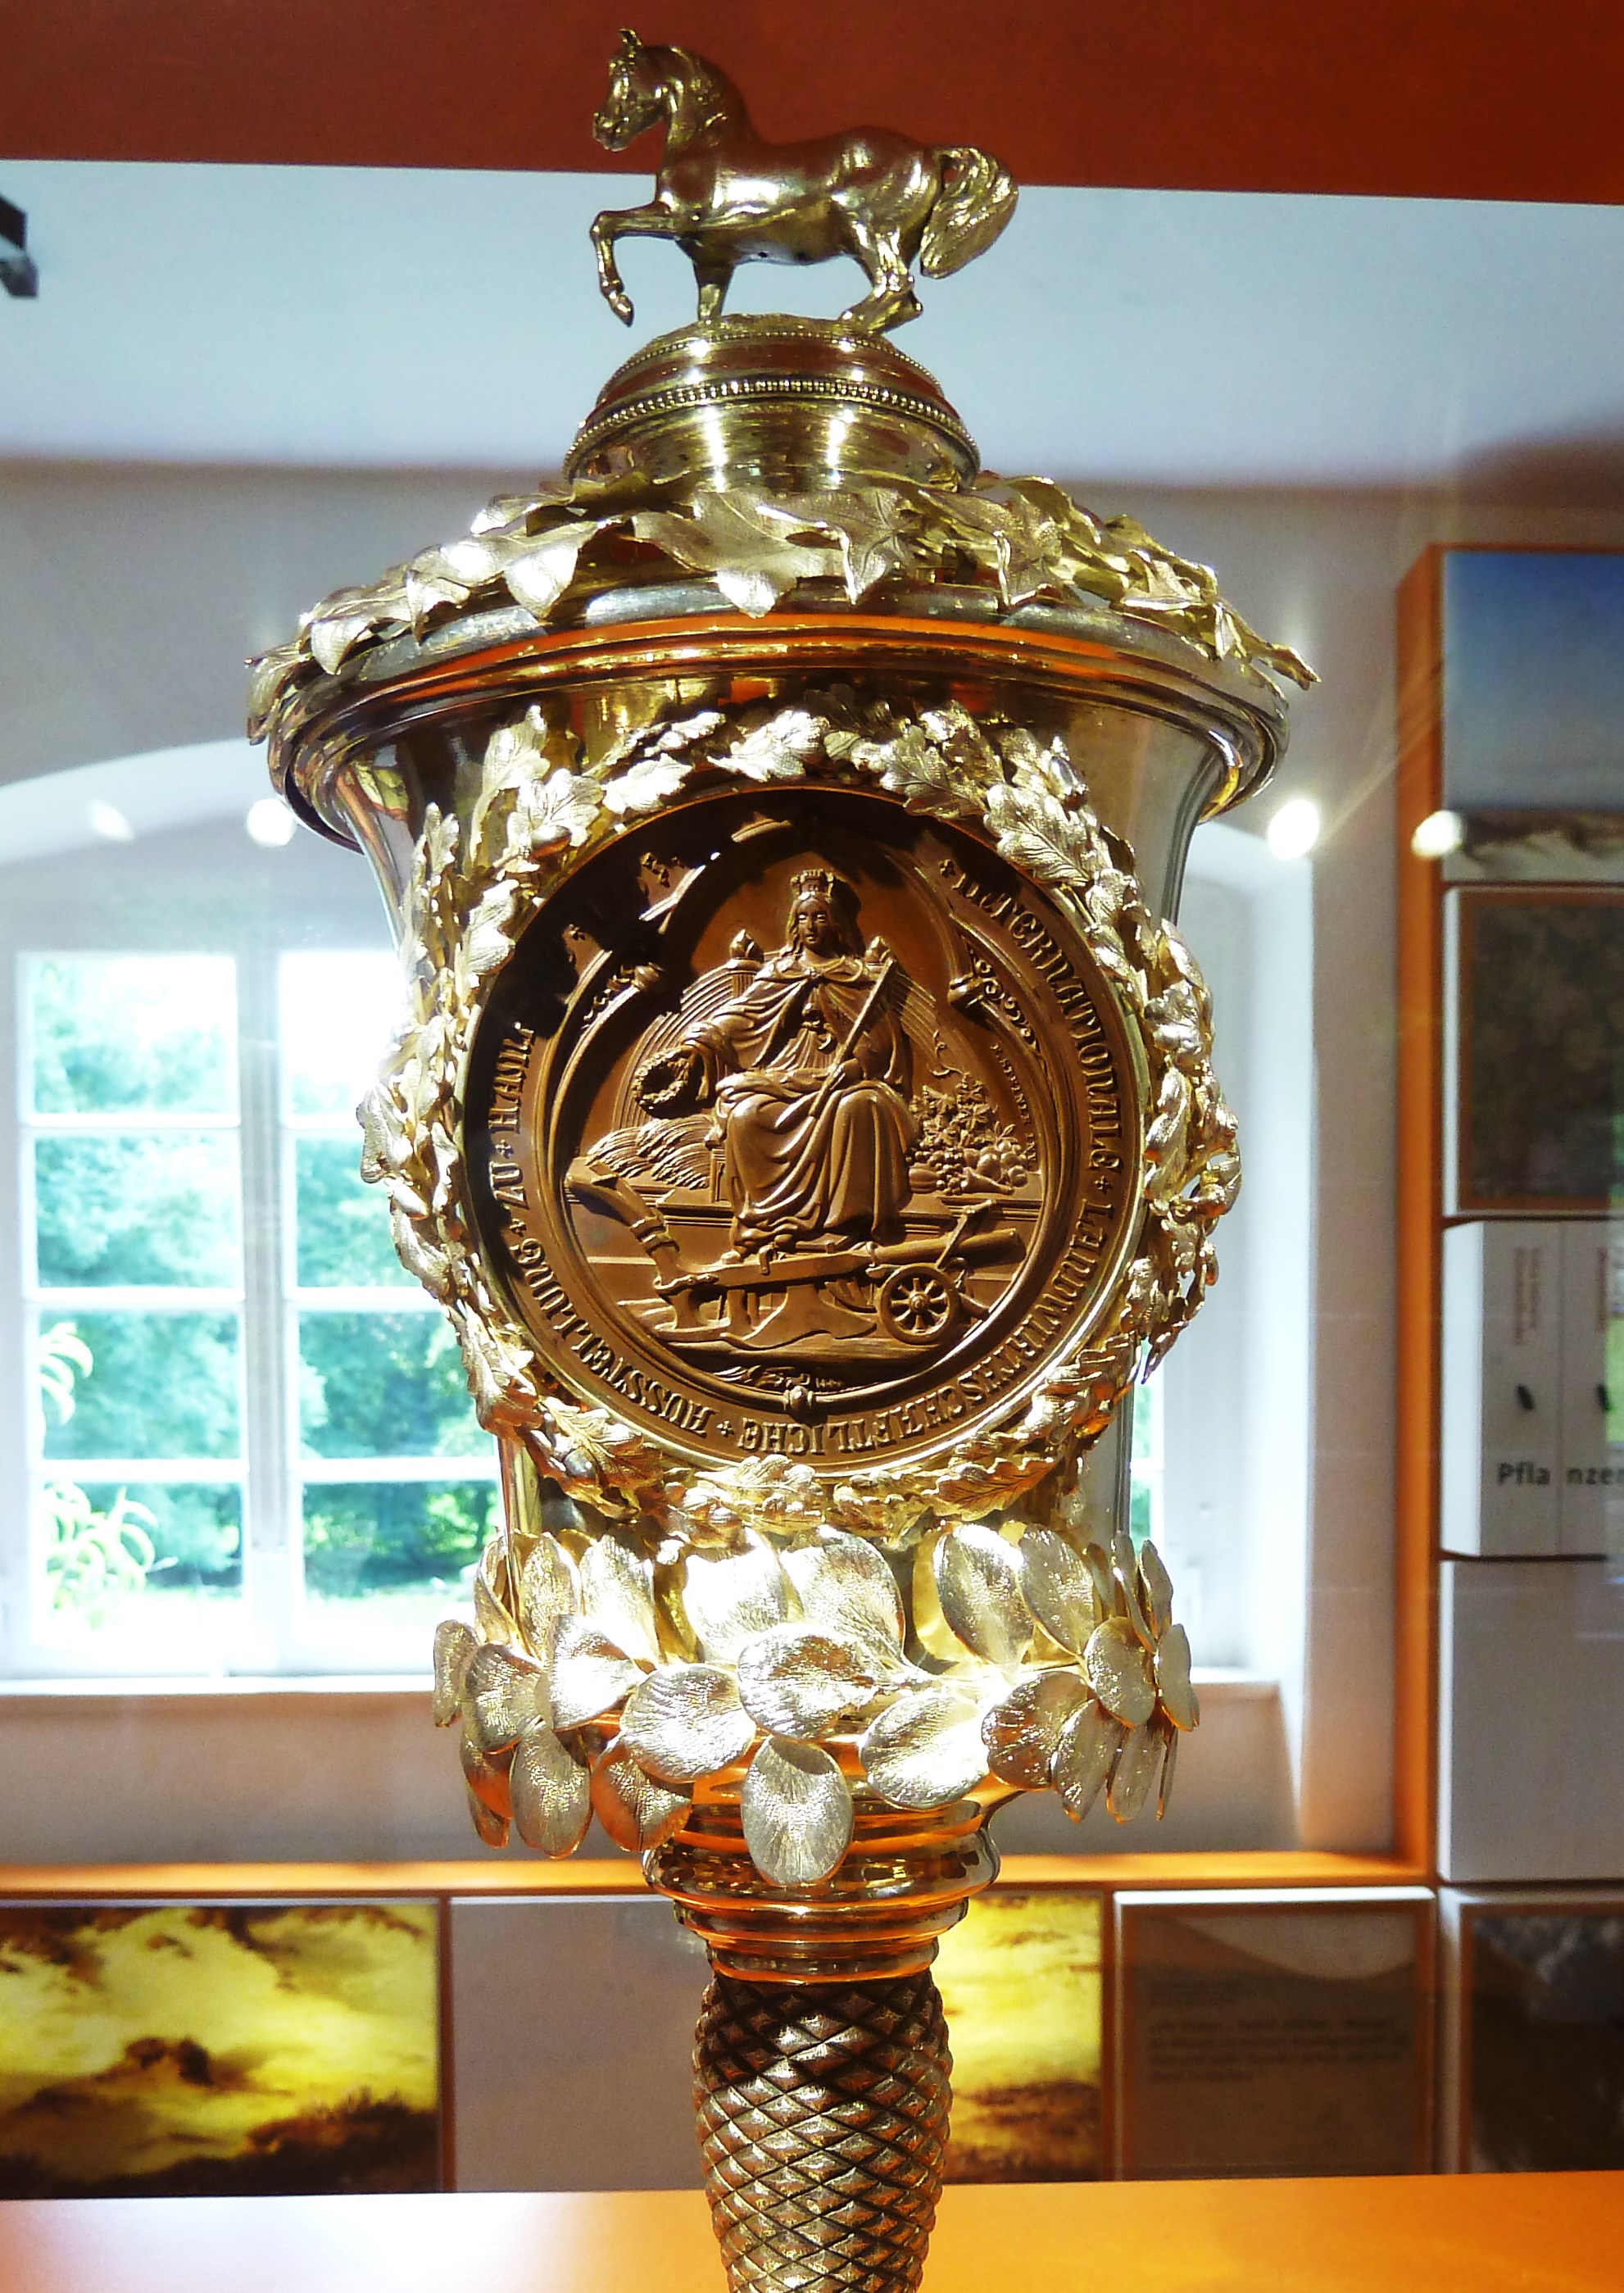 Westfälisches Freilichtmuseum
Pokal